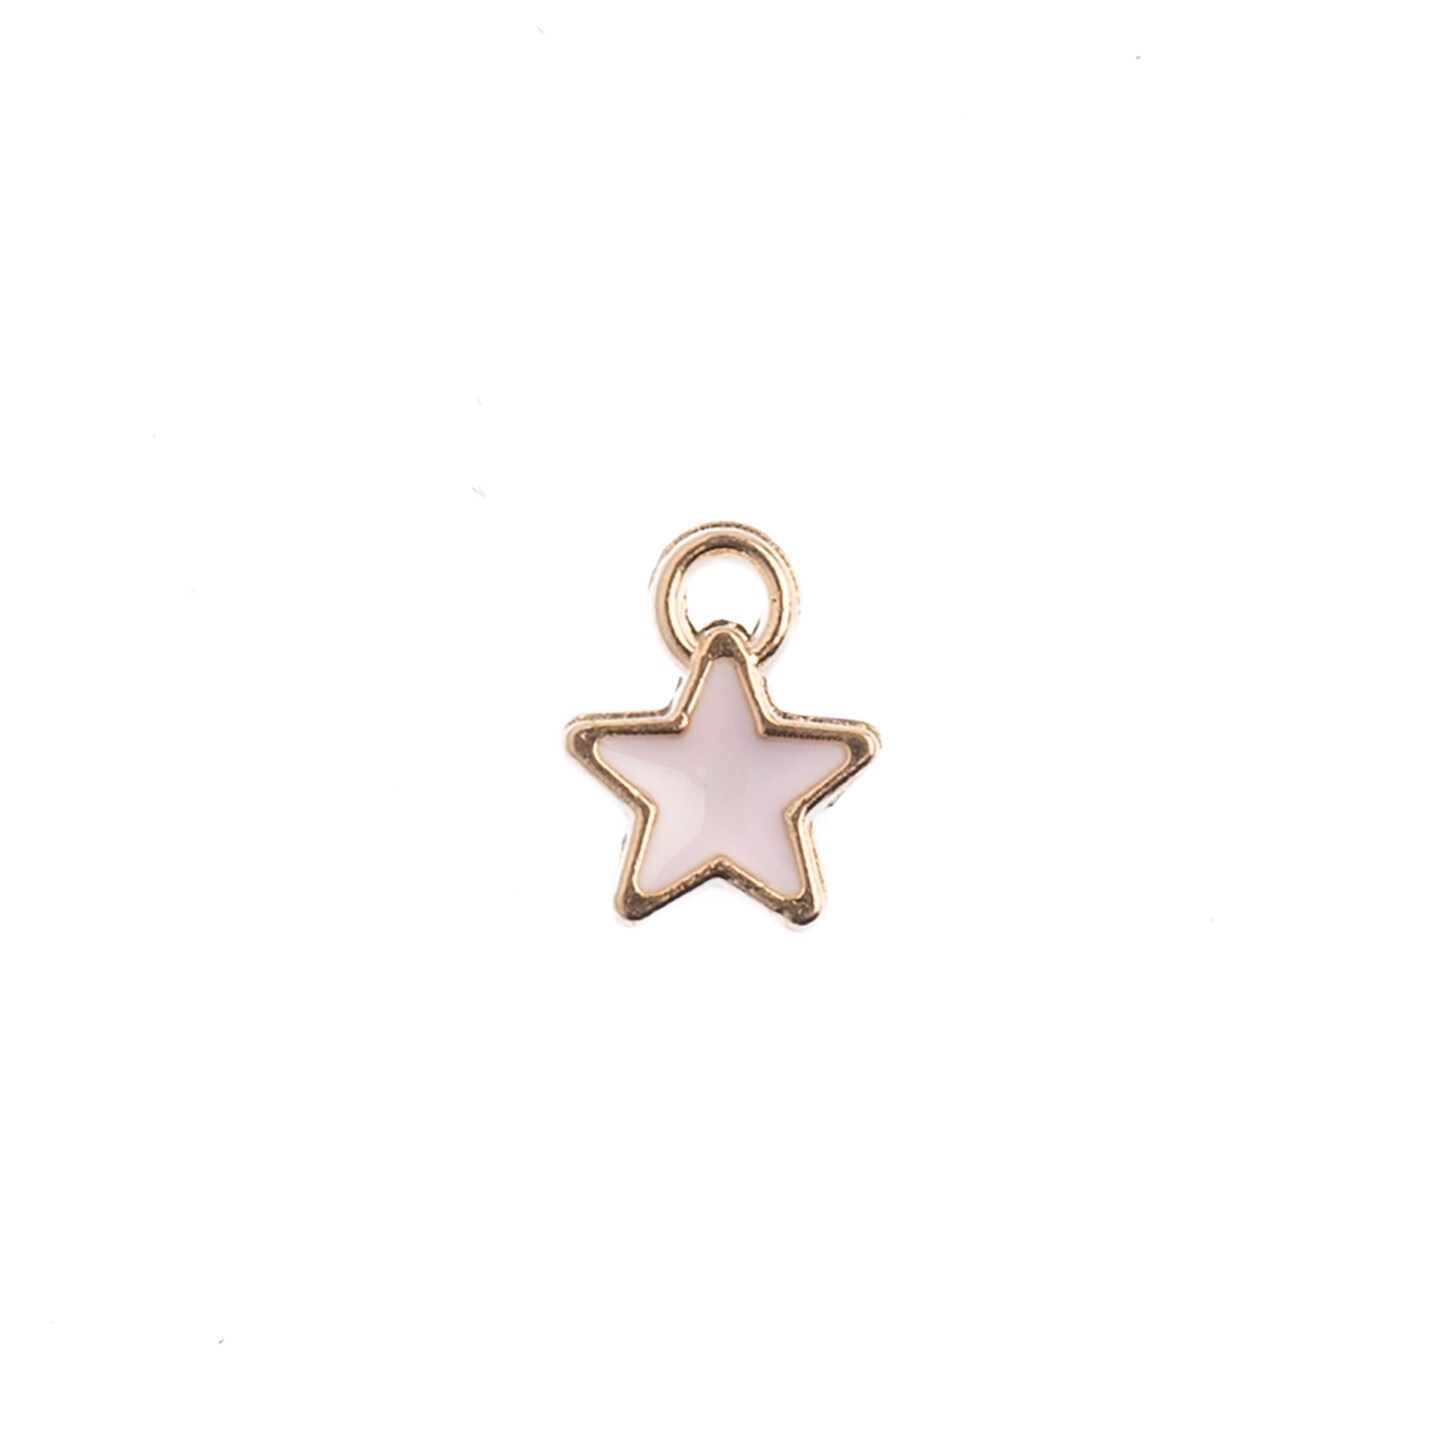 John Bead Sweet & Petite Tiny Star Charms, 10pcs